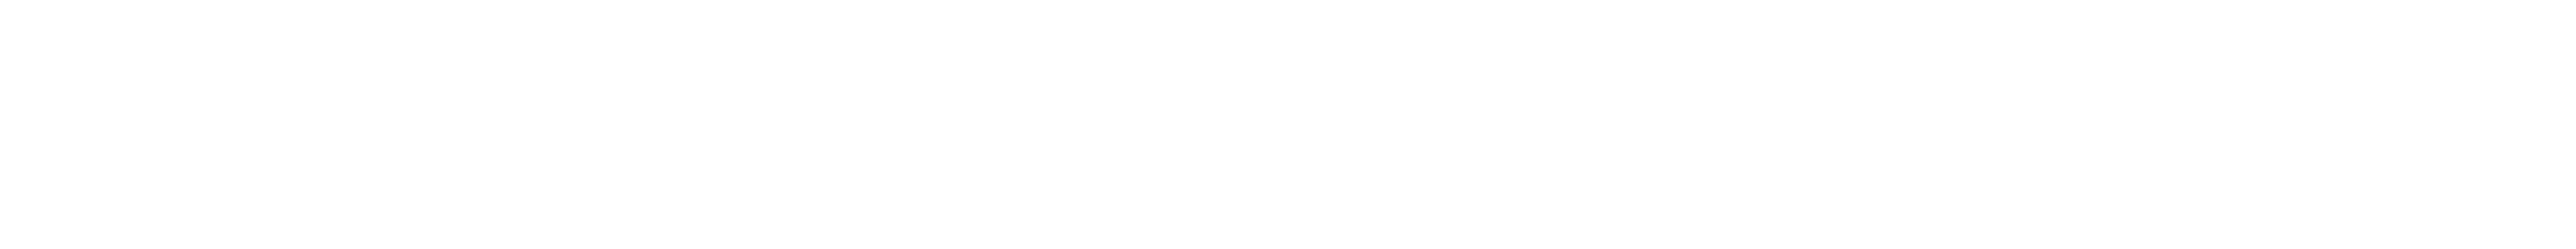 Logo for the program Yoga Detox 30